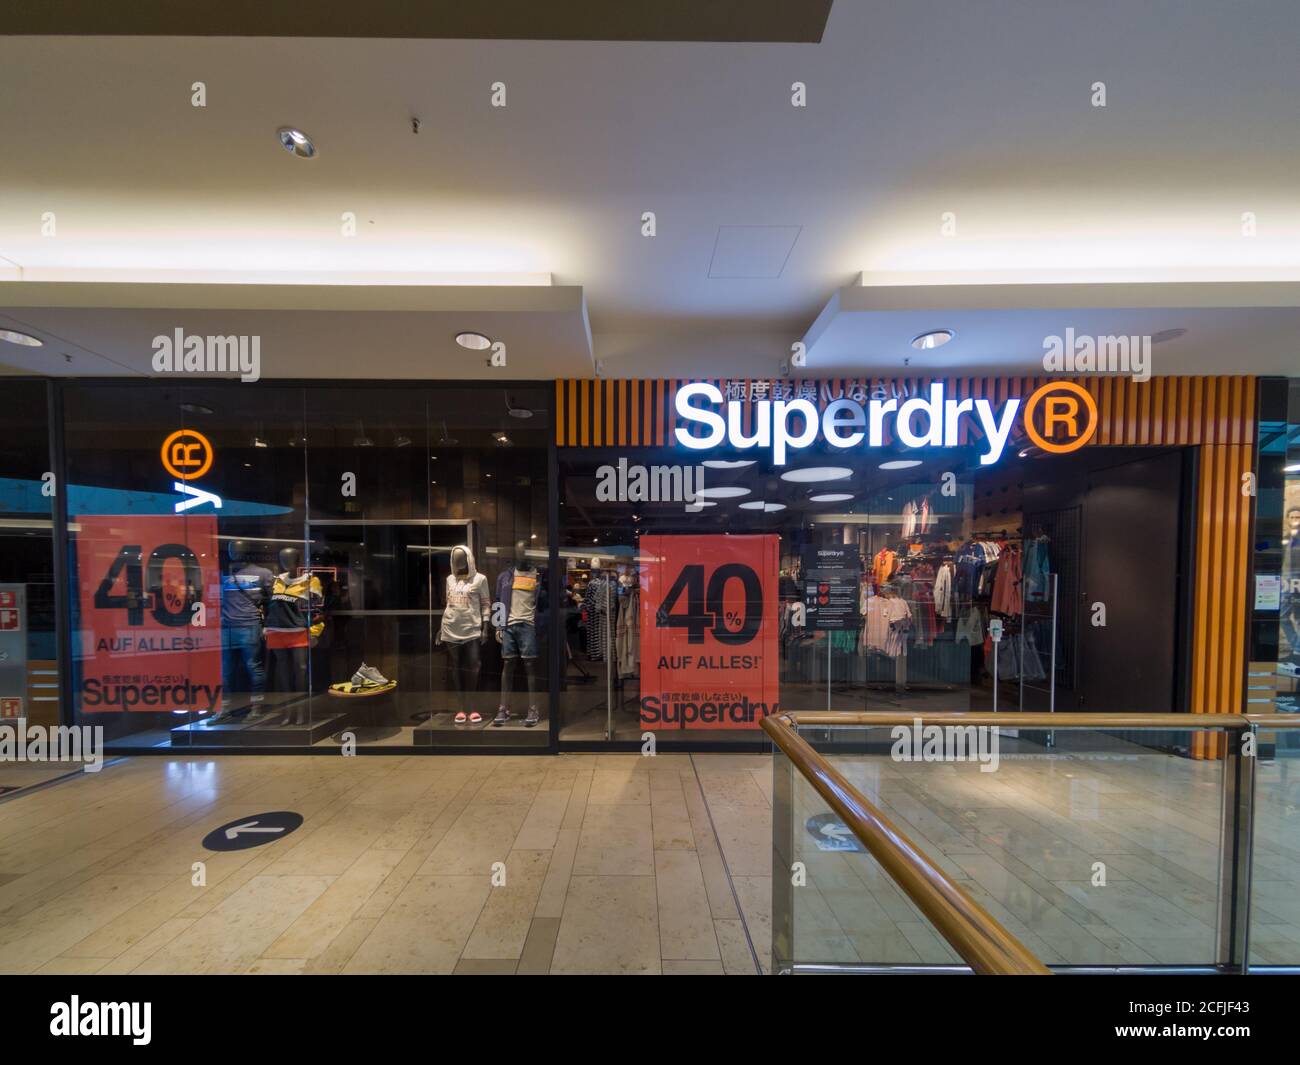 SUPERDRY Shop Store Front in Mall in Hannover, Deutschland, 31.8.2020  Superdry r ist eine berühmte Marke von japanischen Stil Mode-Kleidung.  Kleidung für Männer und Stockfotografie - Alamy